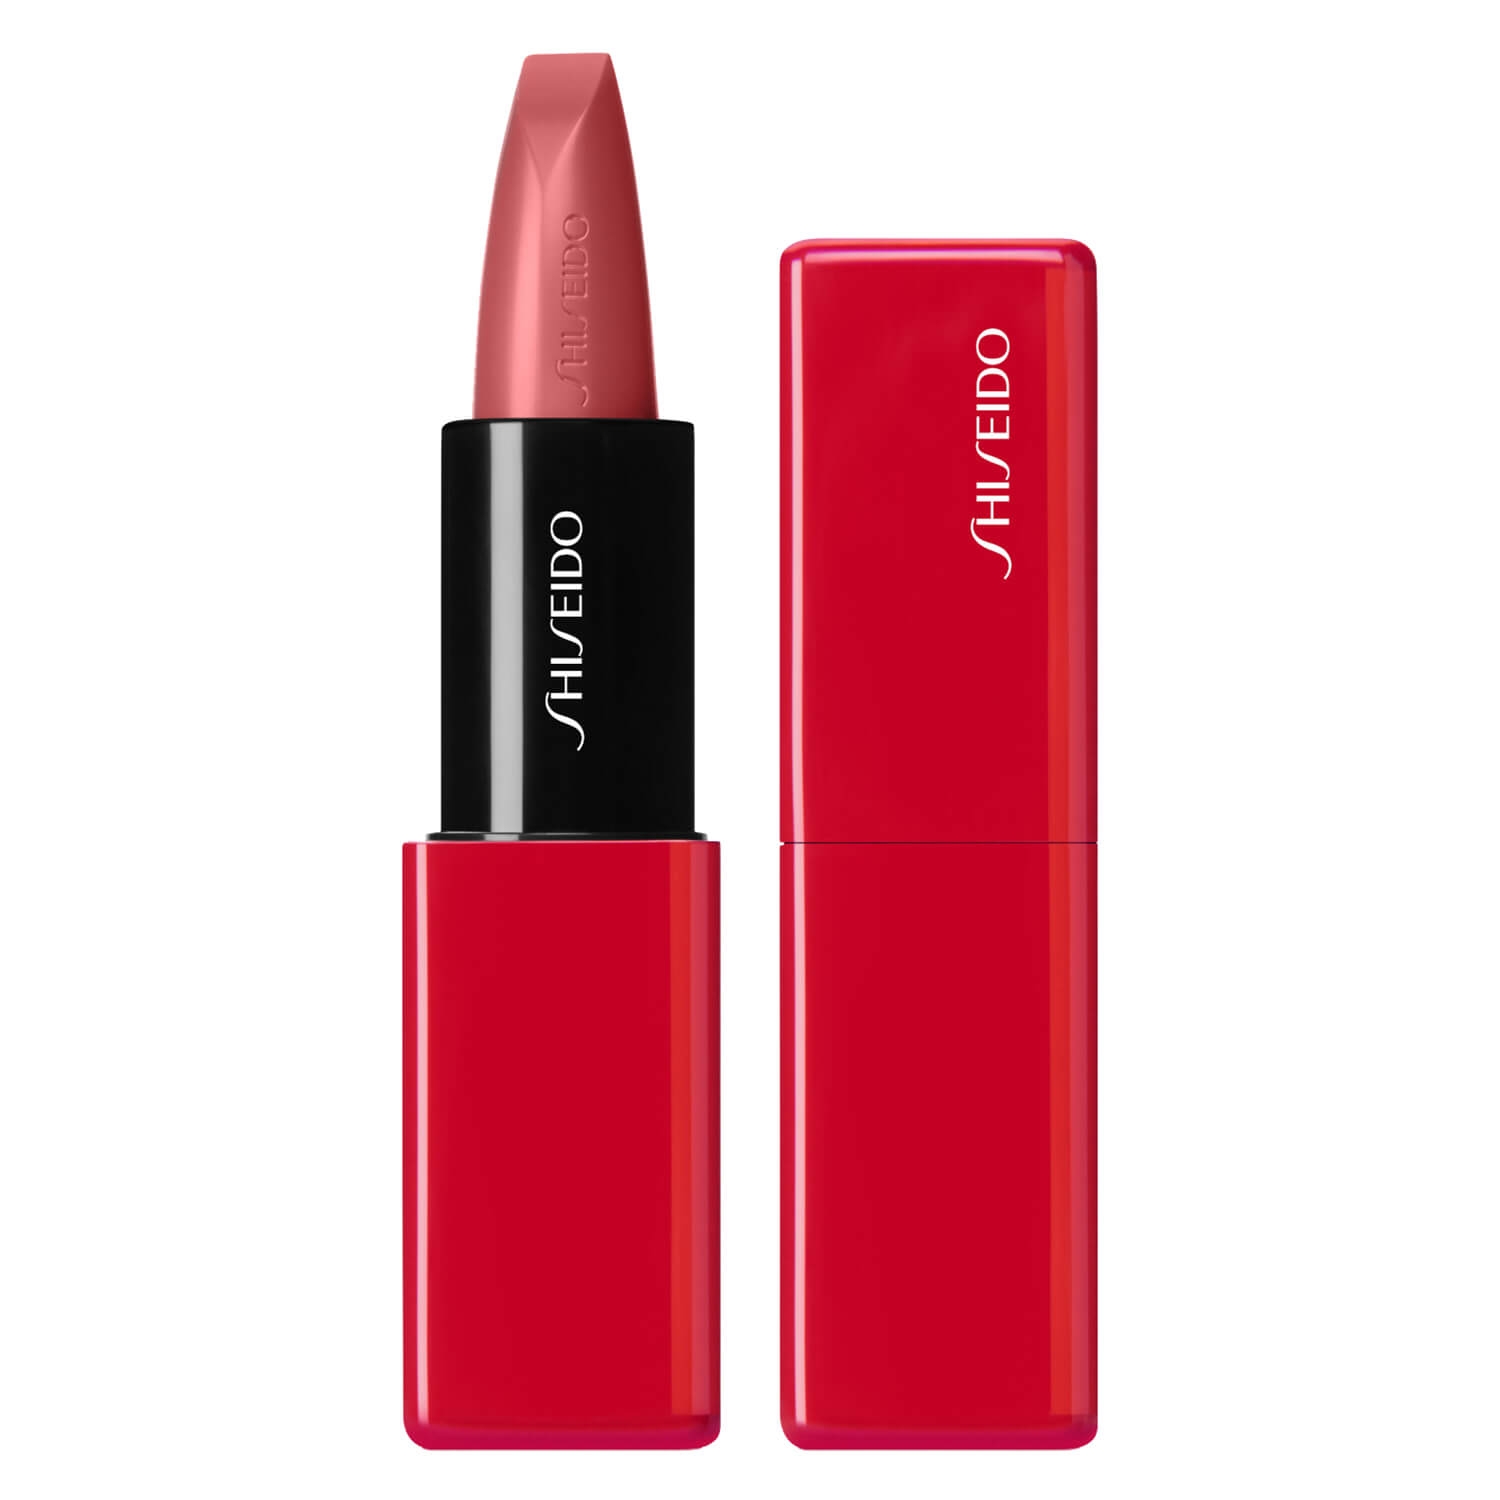 Produktbild von TechnoSatin Gel Lipstick - Voltage Rose 408